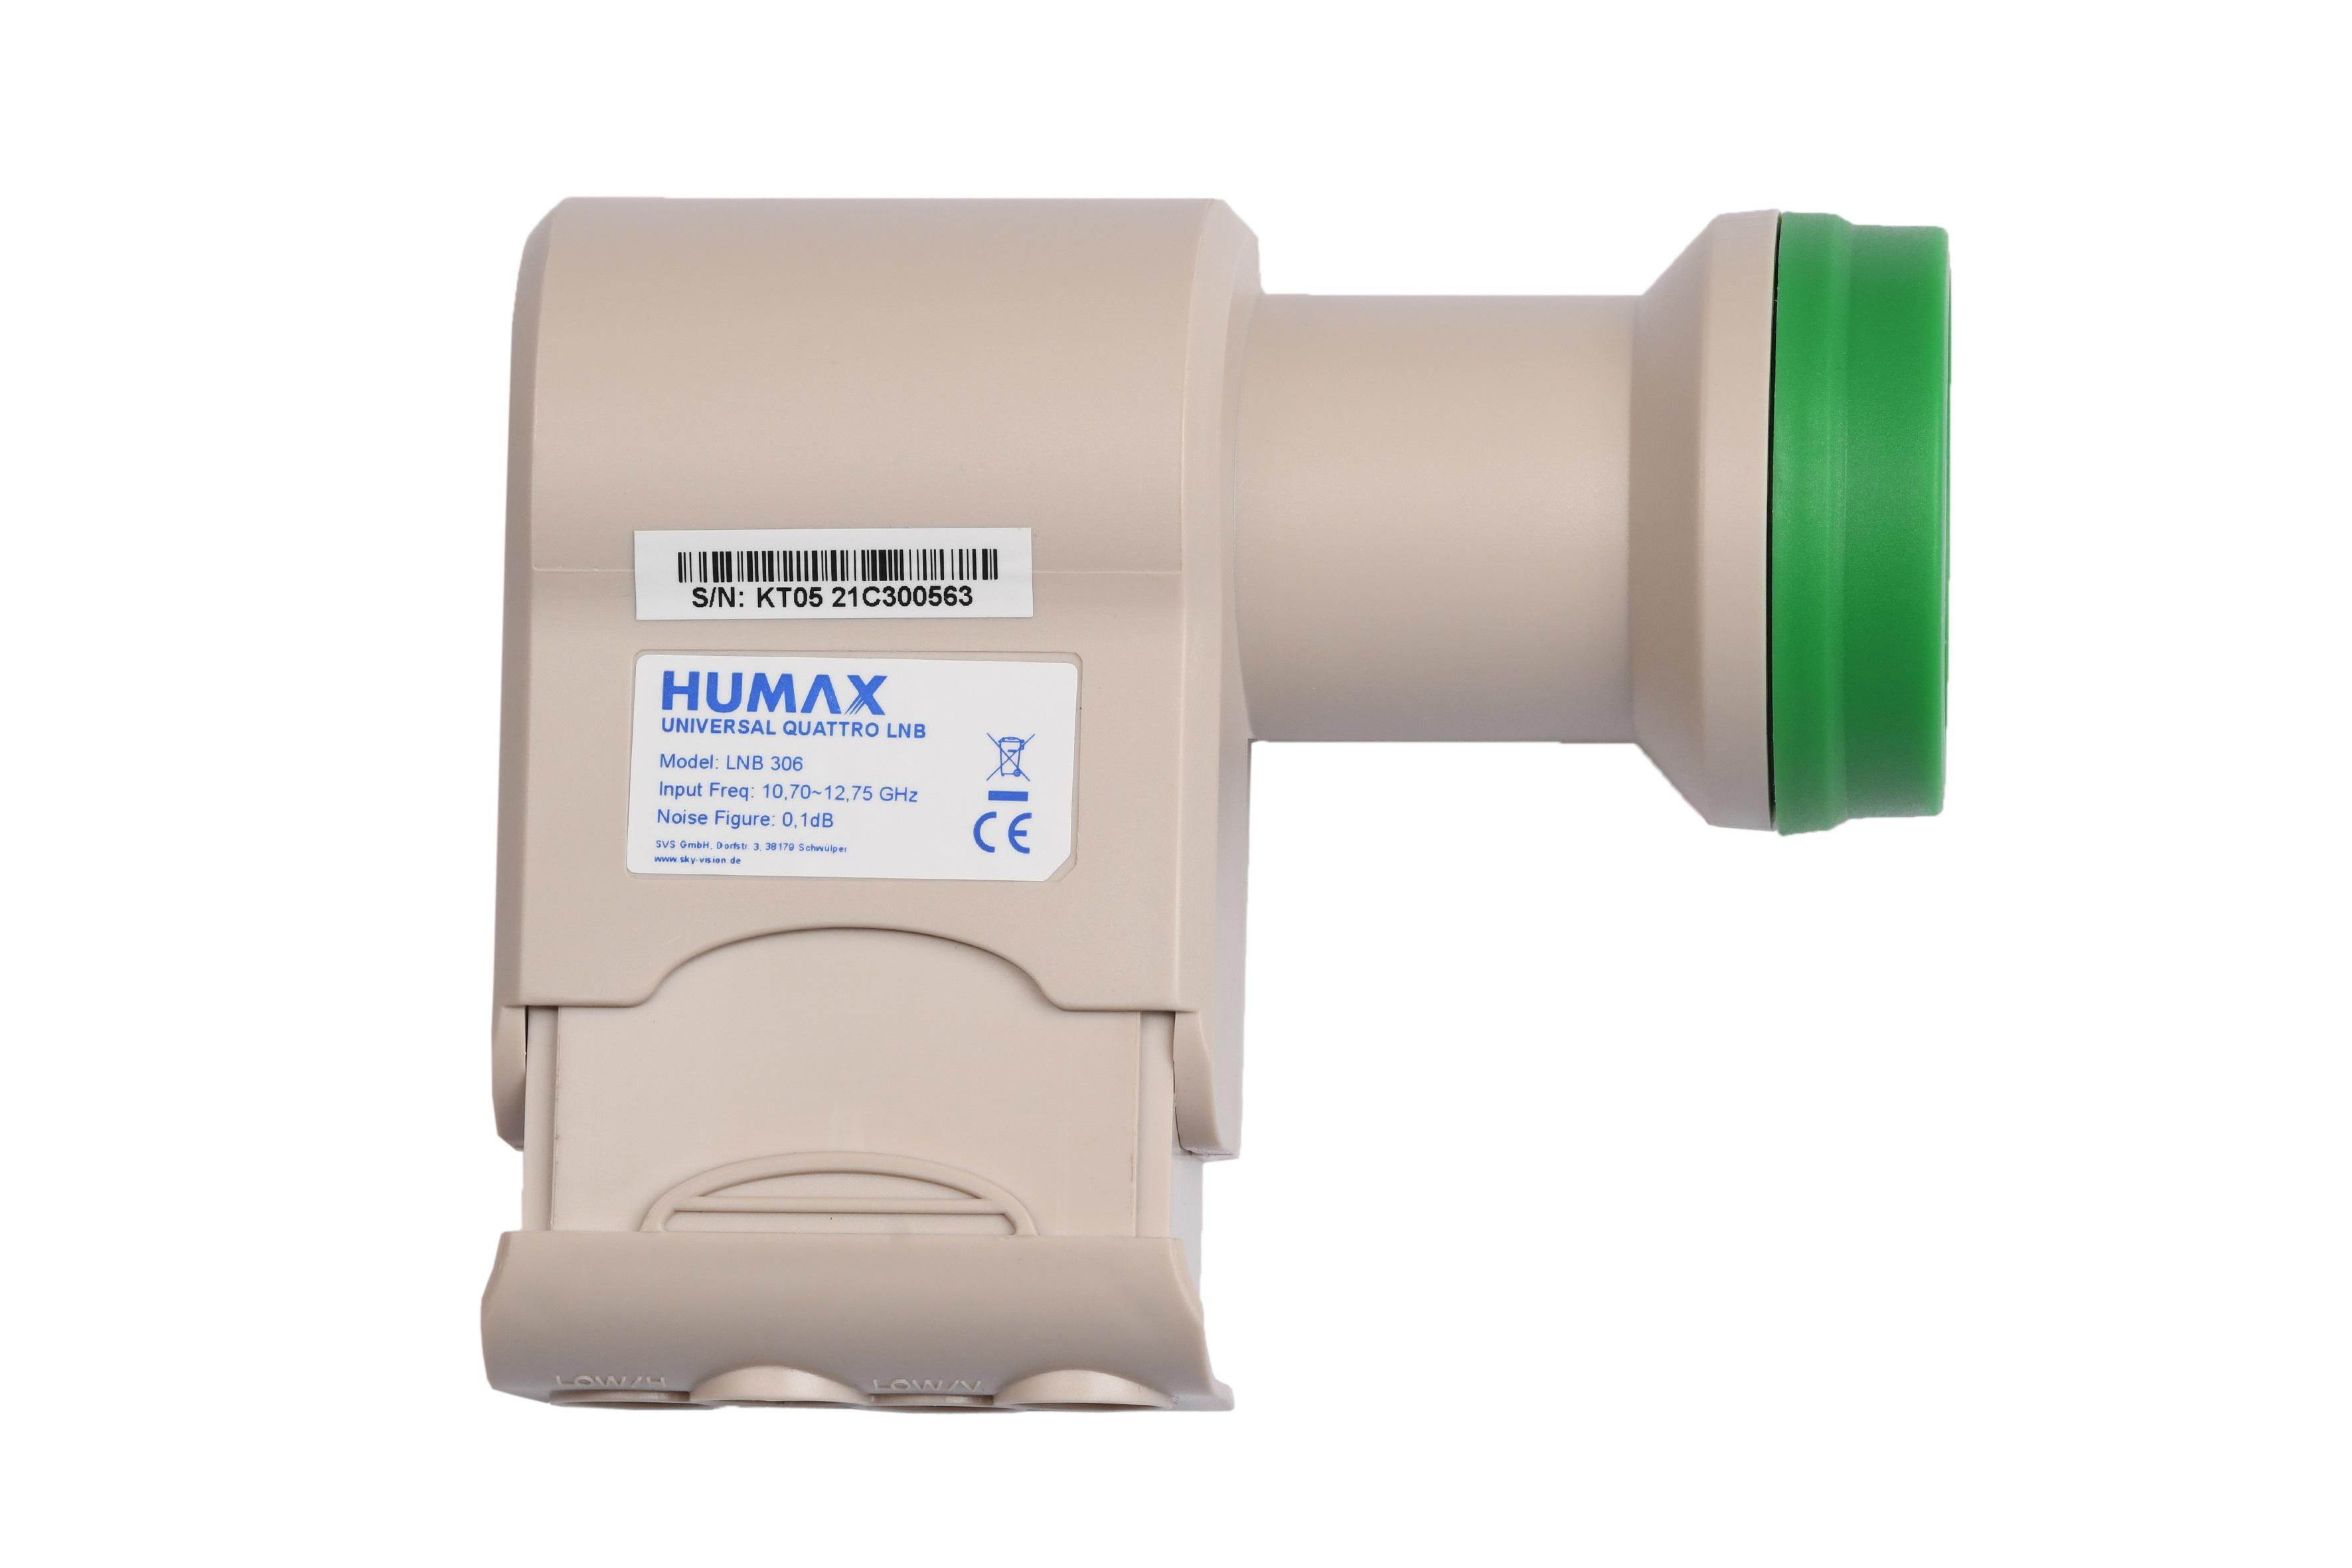 HUMAX 306 Green Power Universal Quattro LNB